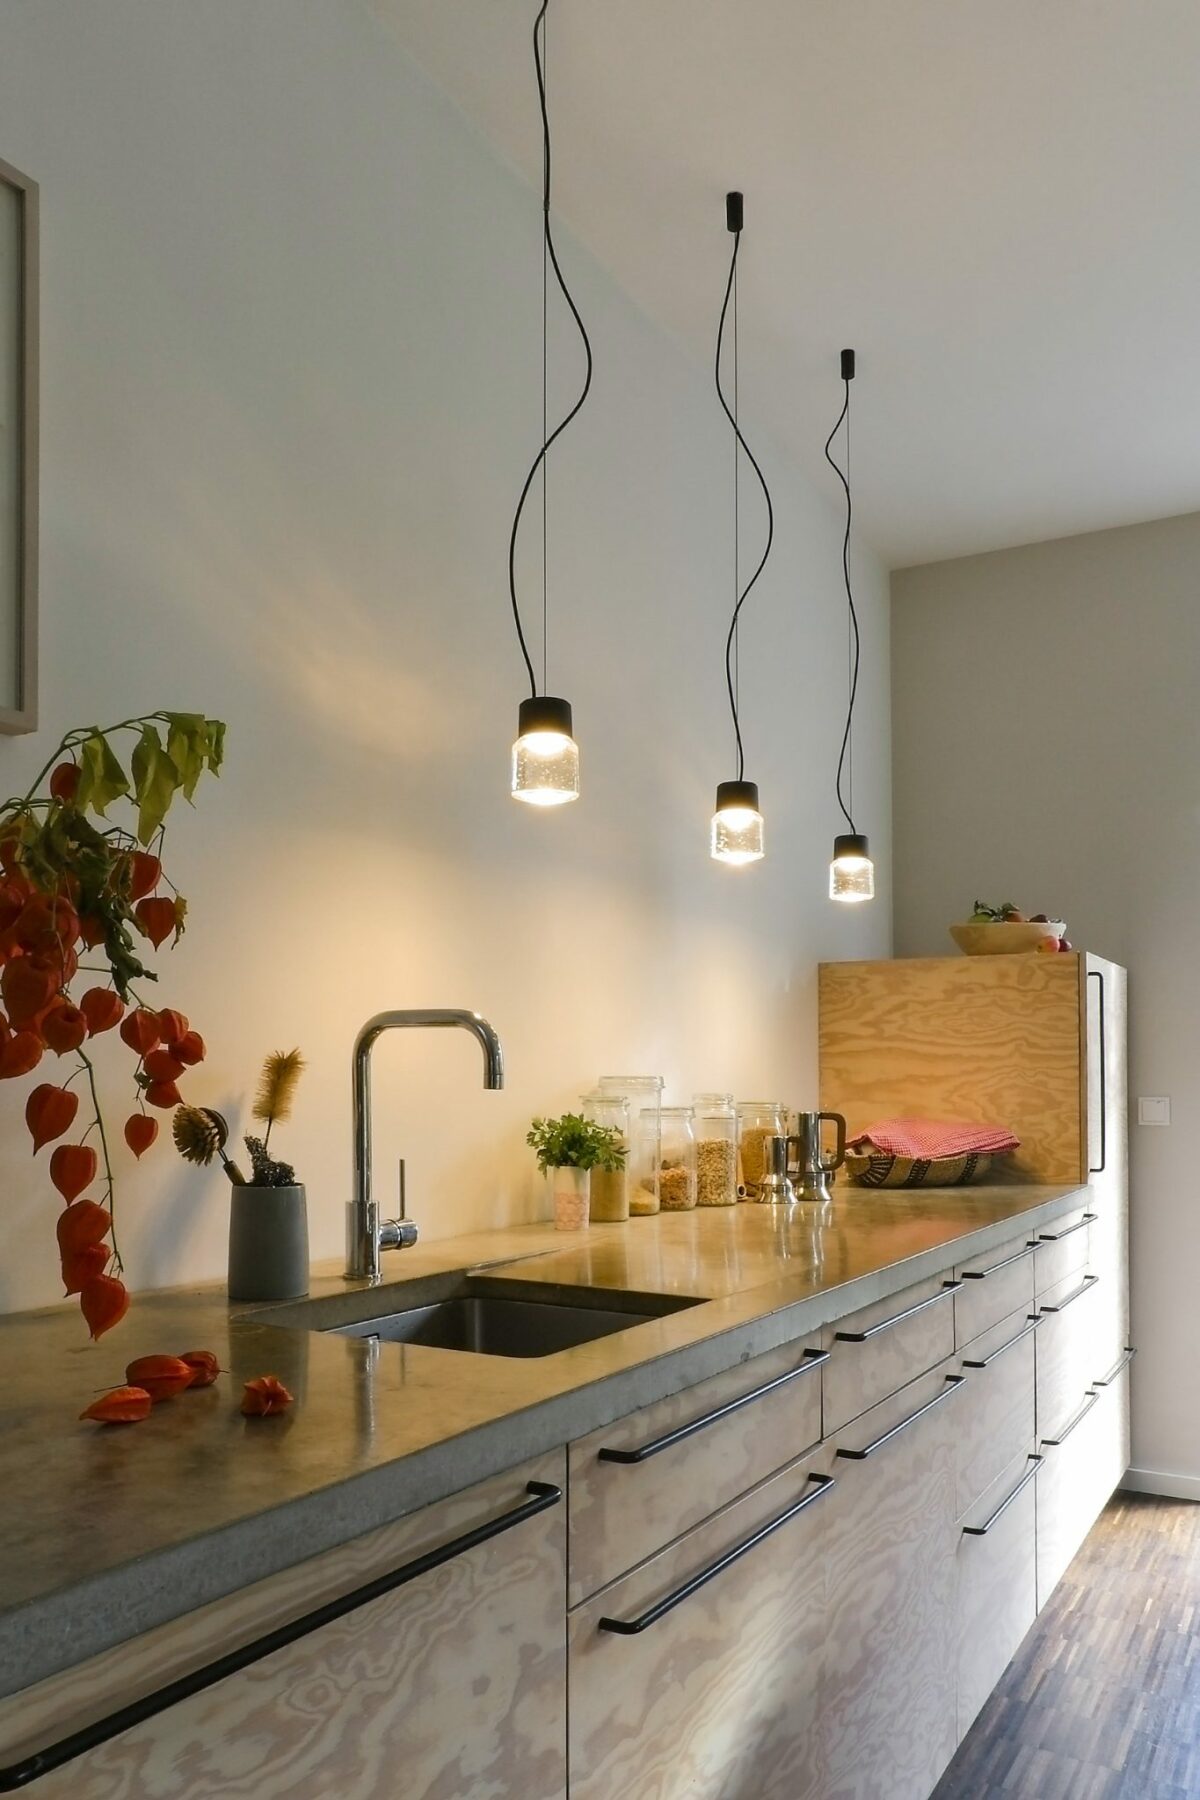 Cast LED Pendelleuchte aus gegossenem Glas und eloxiertem Aluminium als Küchenbeleuchtung über einer Küchensarbeitsplatte.